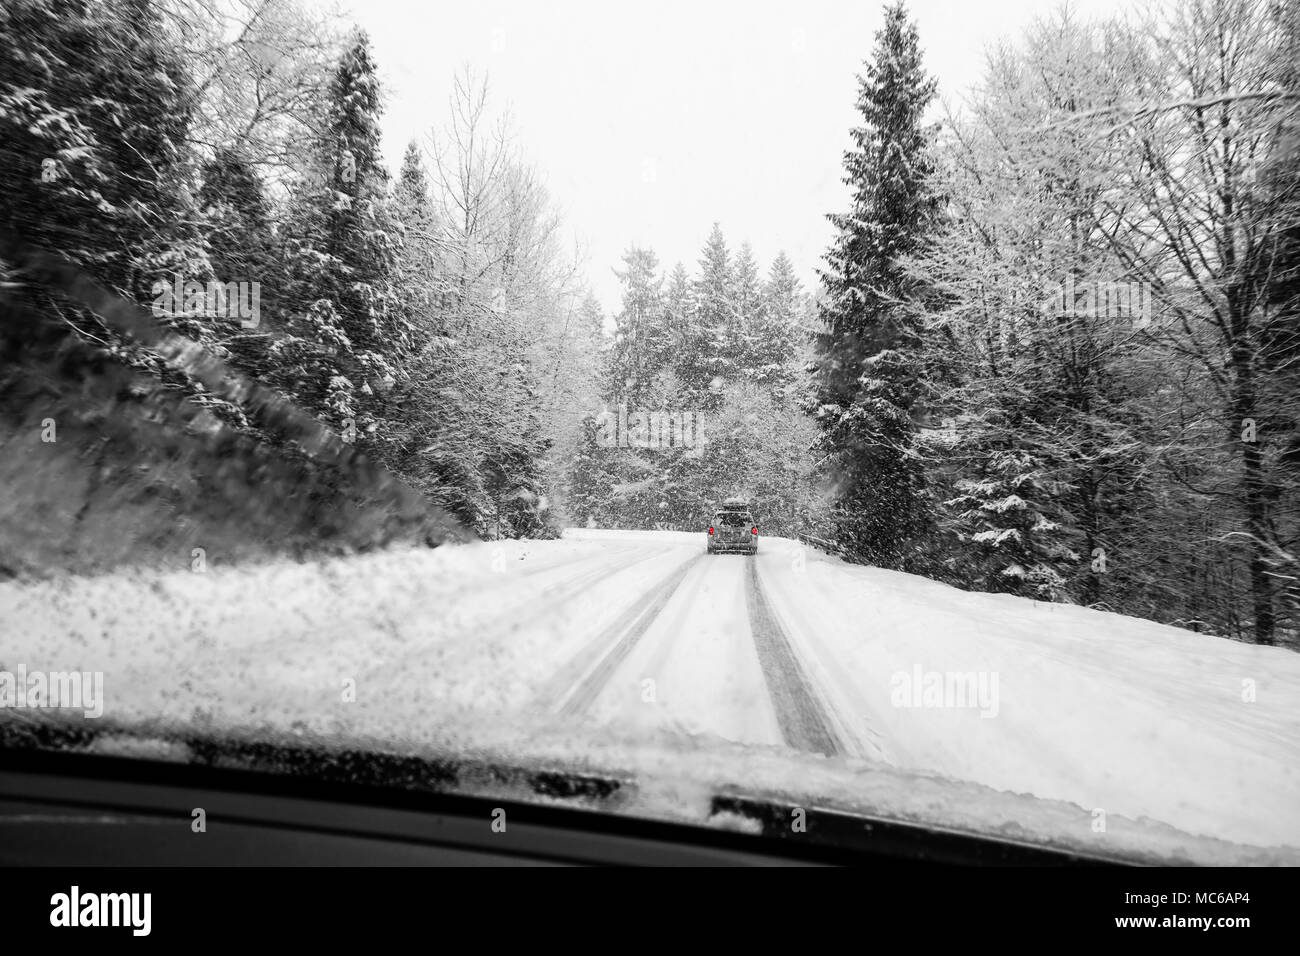 La conduite automobile en hiver neige prises à travers un pare-brise couvert de flocons blured. Banque D'Images